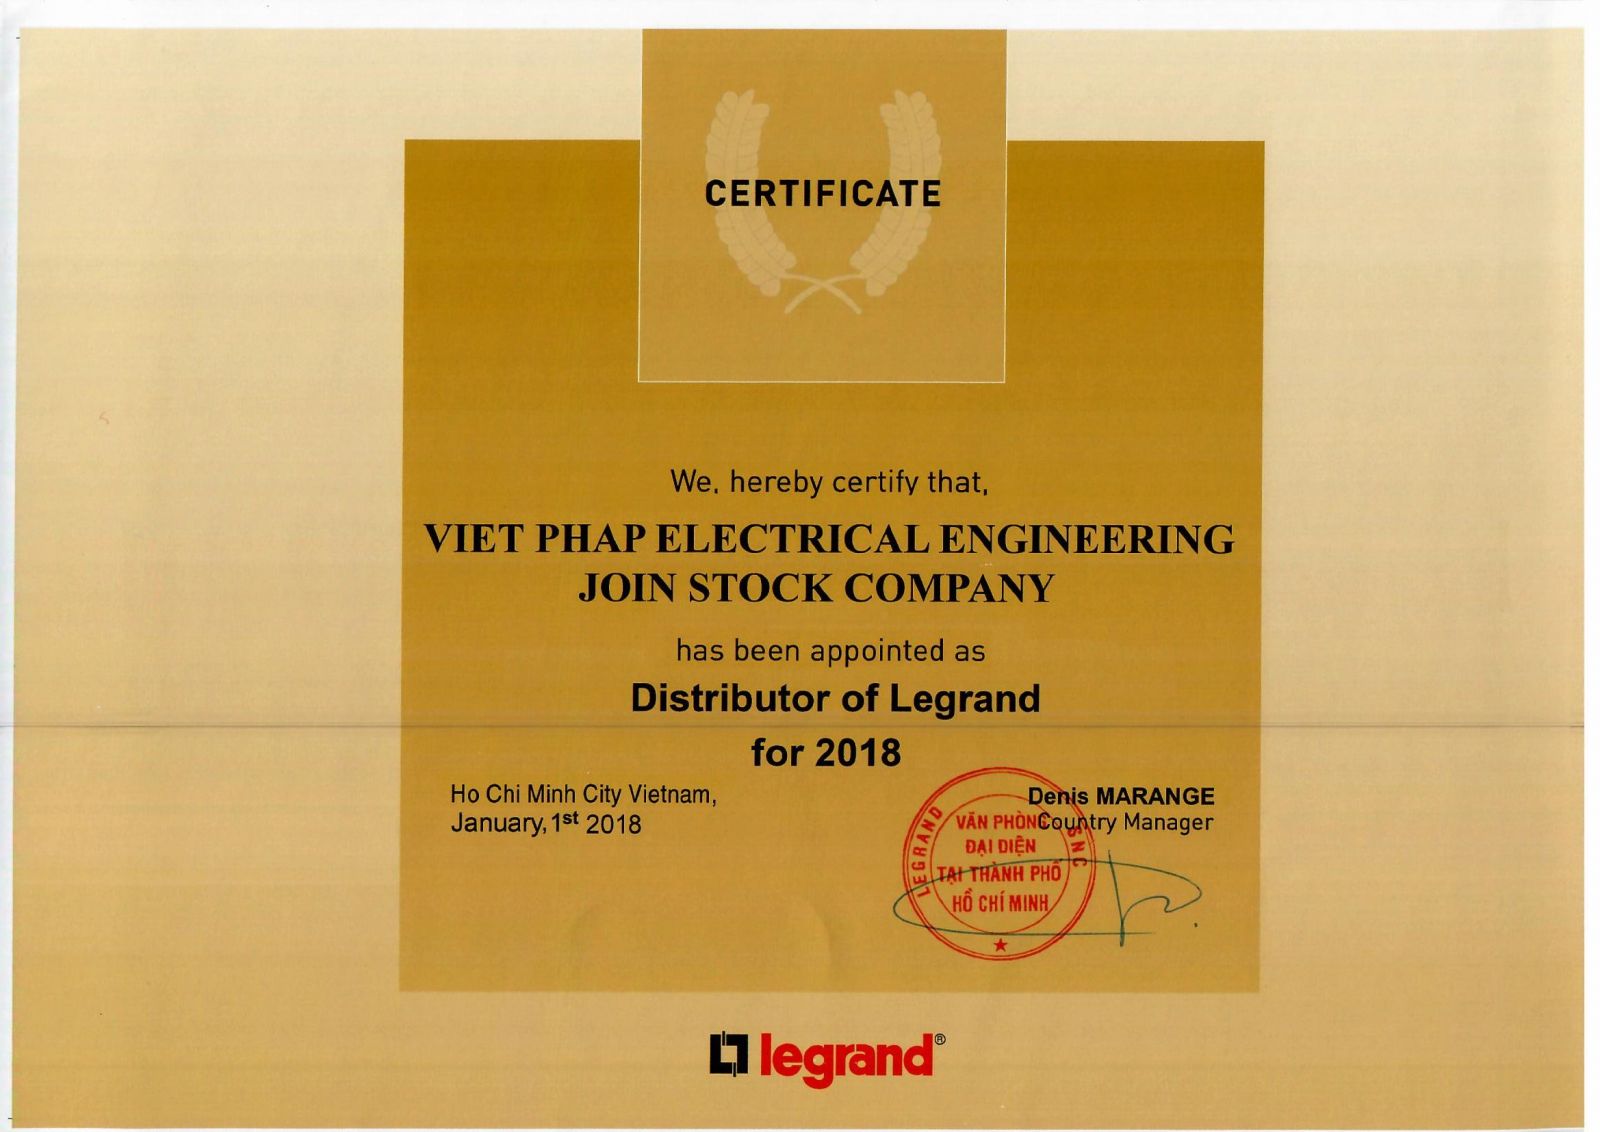 Giấy chứng nhận nhà nhập khẩu và phân phối chính thức thiết bị điện cao cấp Legrand tại Việt Nam